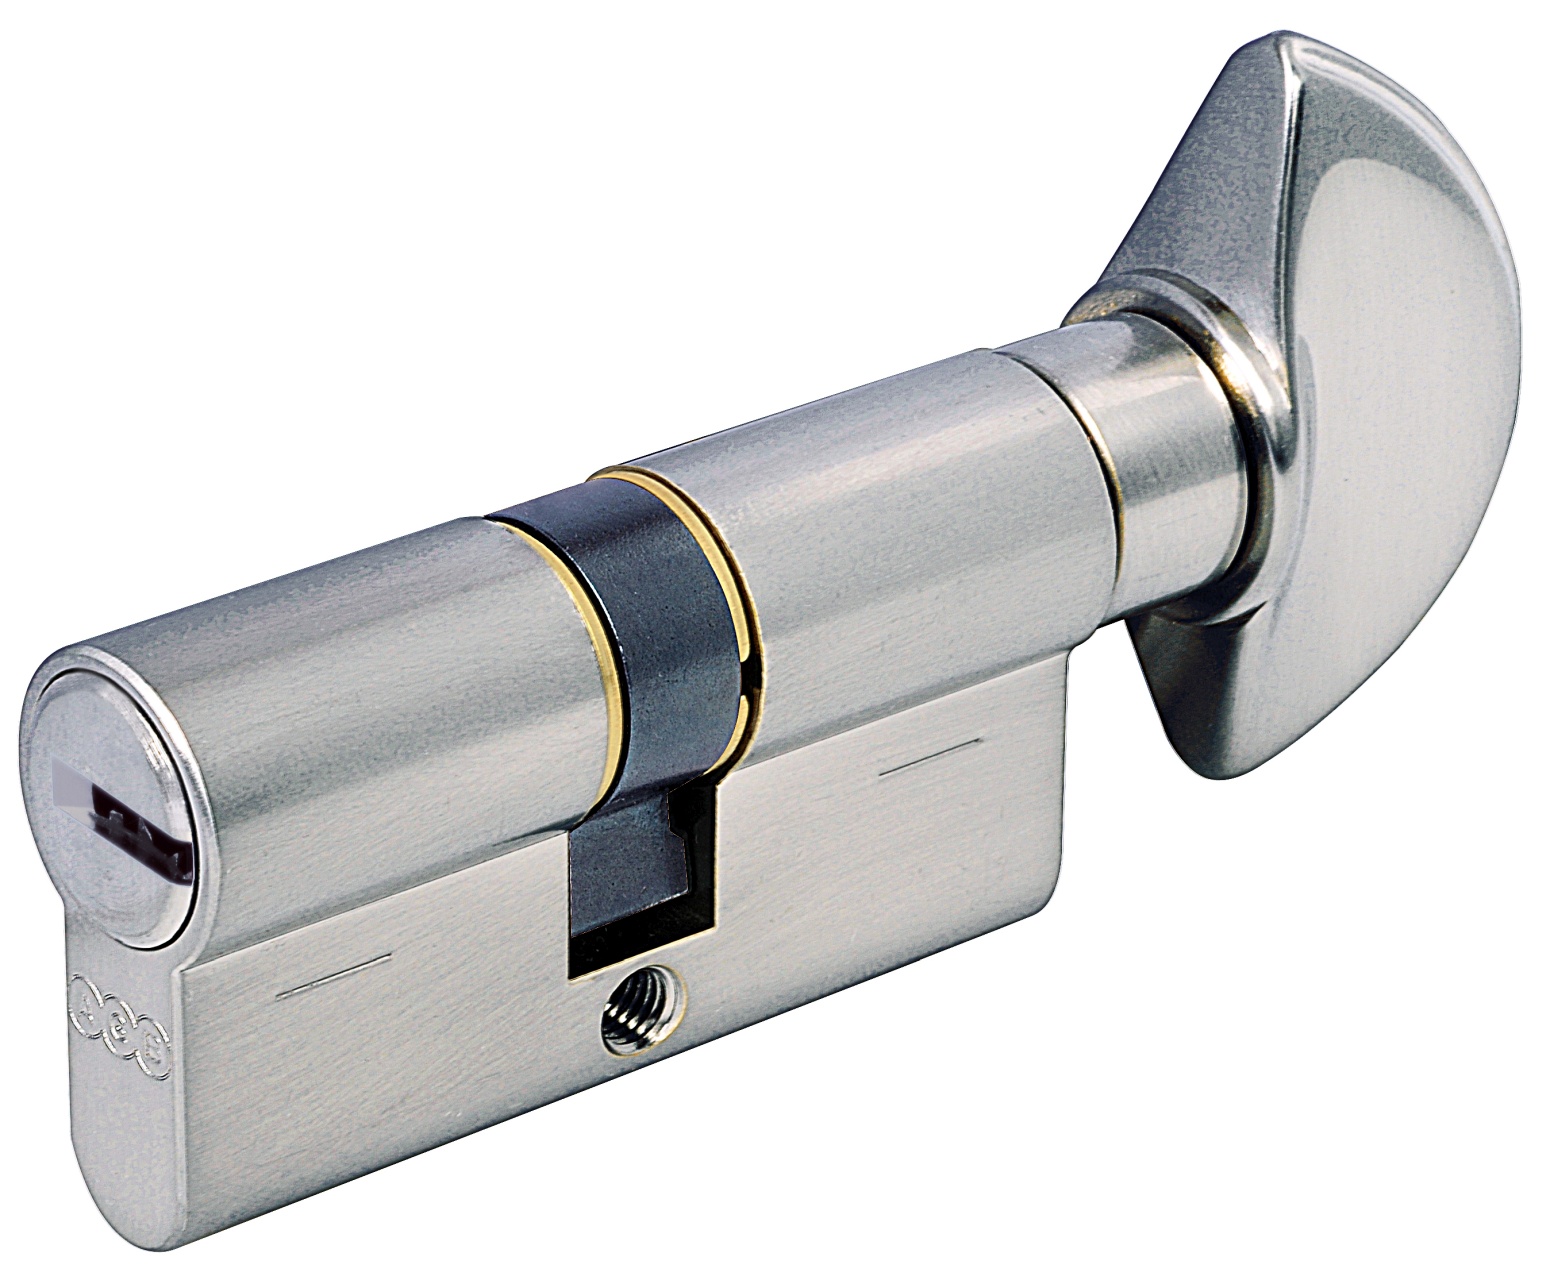 AGB -  Cilindro SCUDO 5000 PS frizionato anti bamping con chiave e pomolo - col. NICHELATO OPACO - lunghezza 80 - misura P-25-10-45